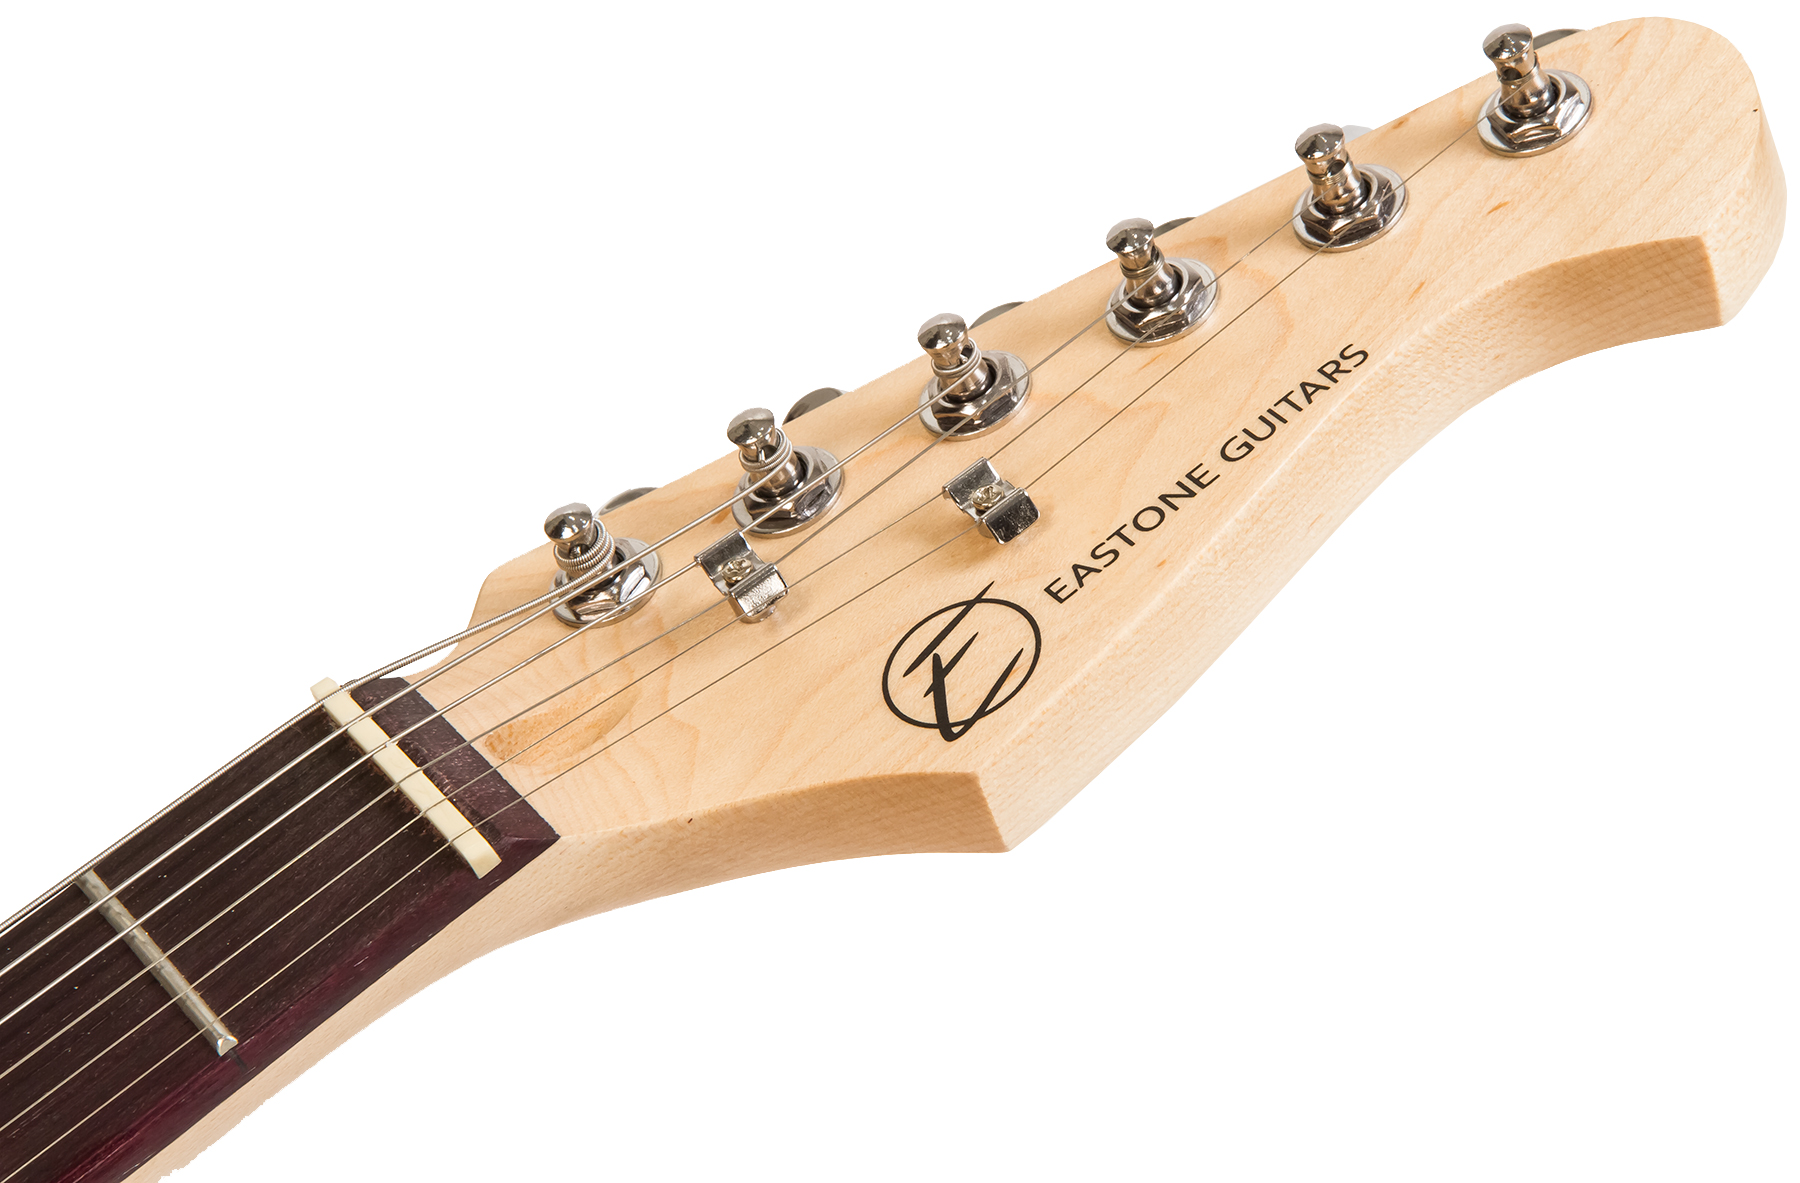 Eastone Str70t 3s Trem Pur - Lake Placid Blue - Str shape electric guitar - Variation 3